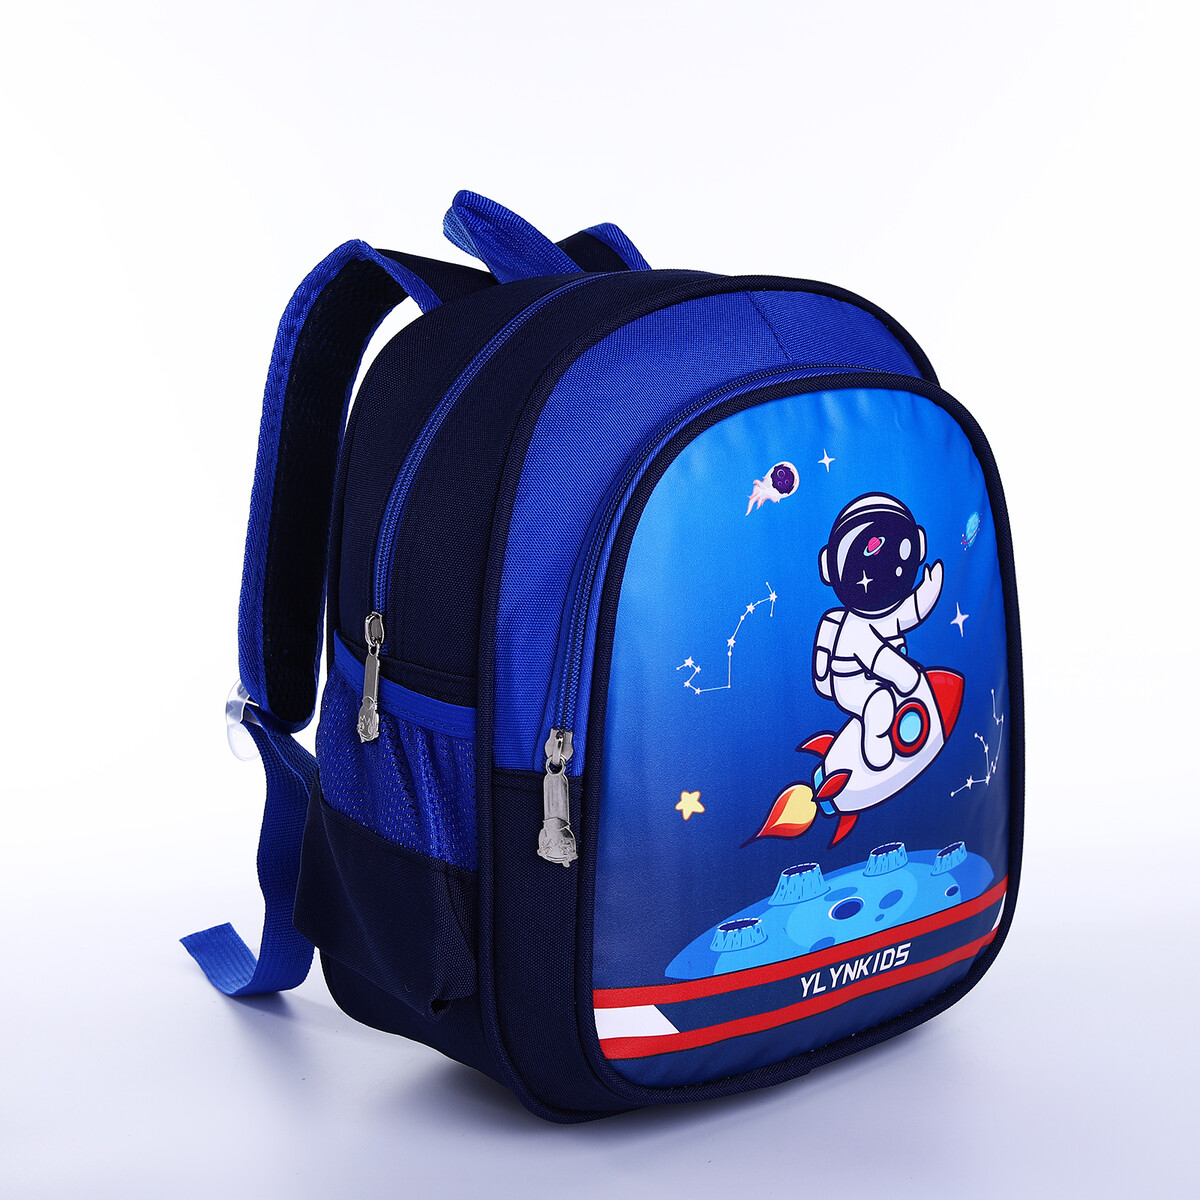 Рюкзак детский на молнии, 3 наружных кармана, цвет синий рюкзак на молнии 2 наружных кармана синий